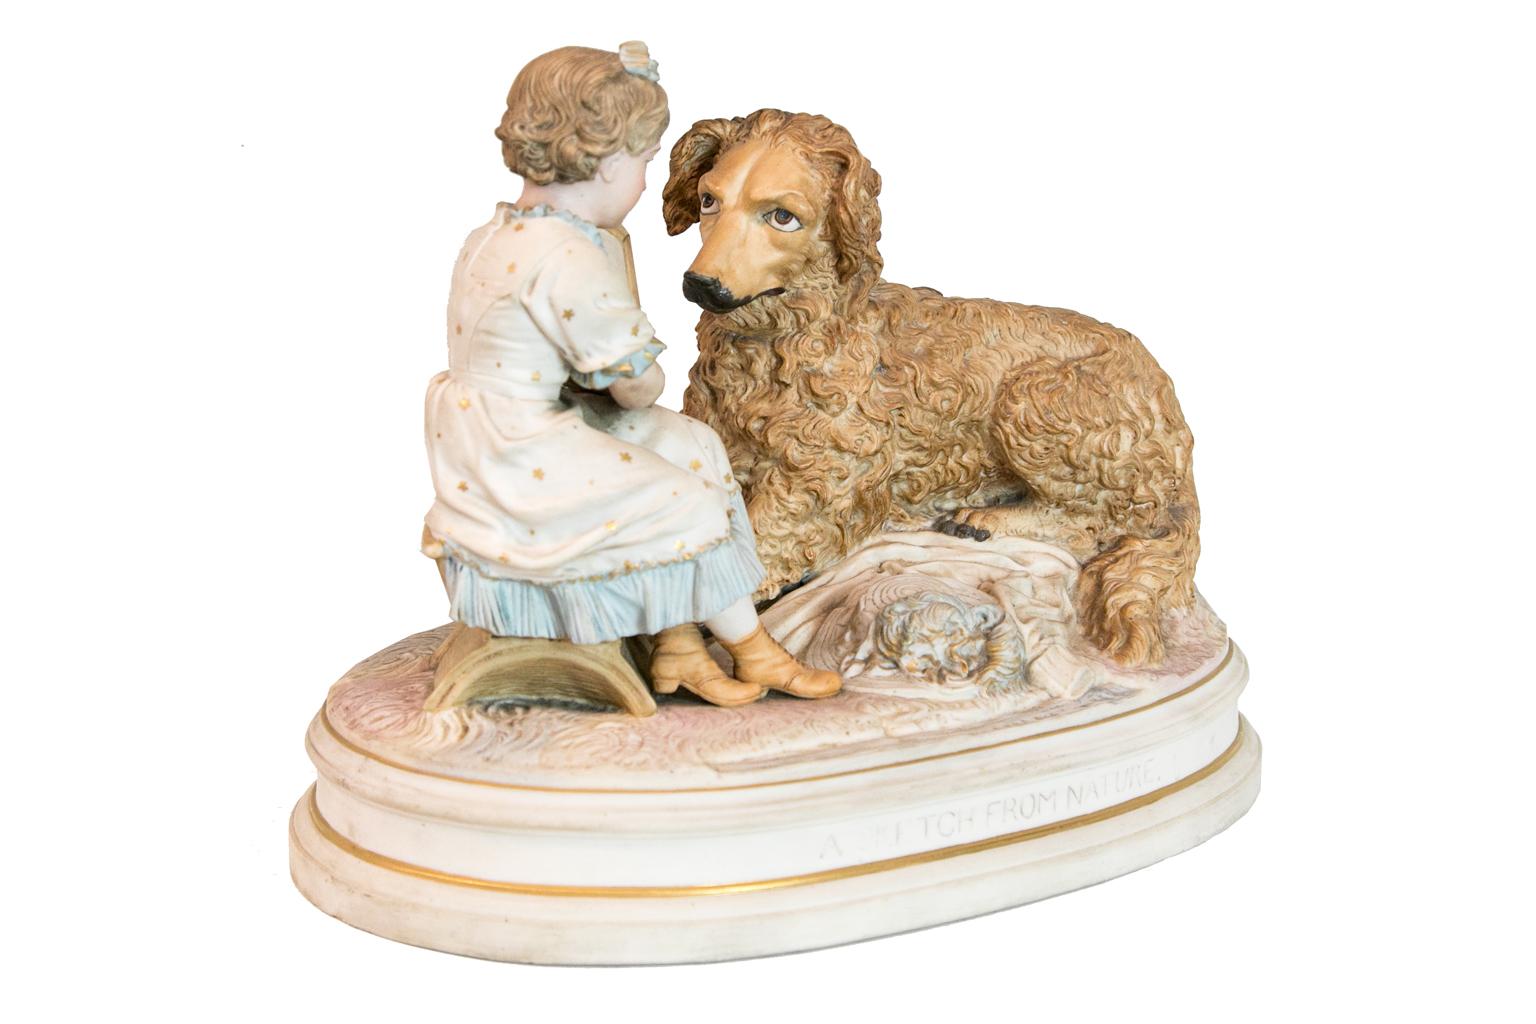 Groupe de figurines en biscuit anglais représentant un chien en furie avec une fille illustrant un dessin de chien. Le titre, 